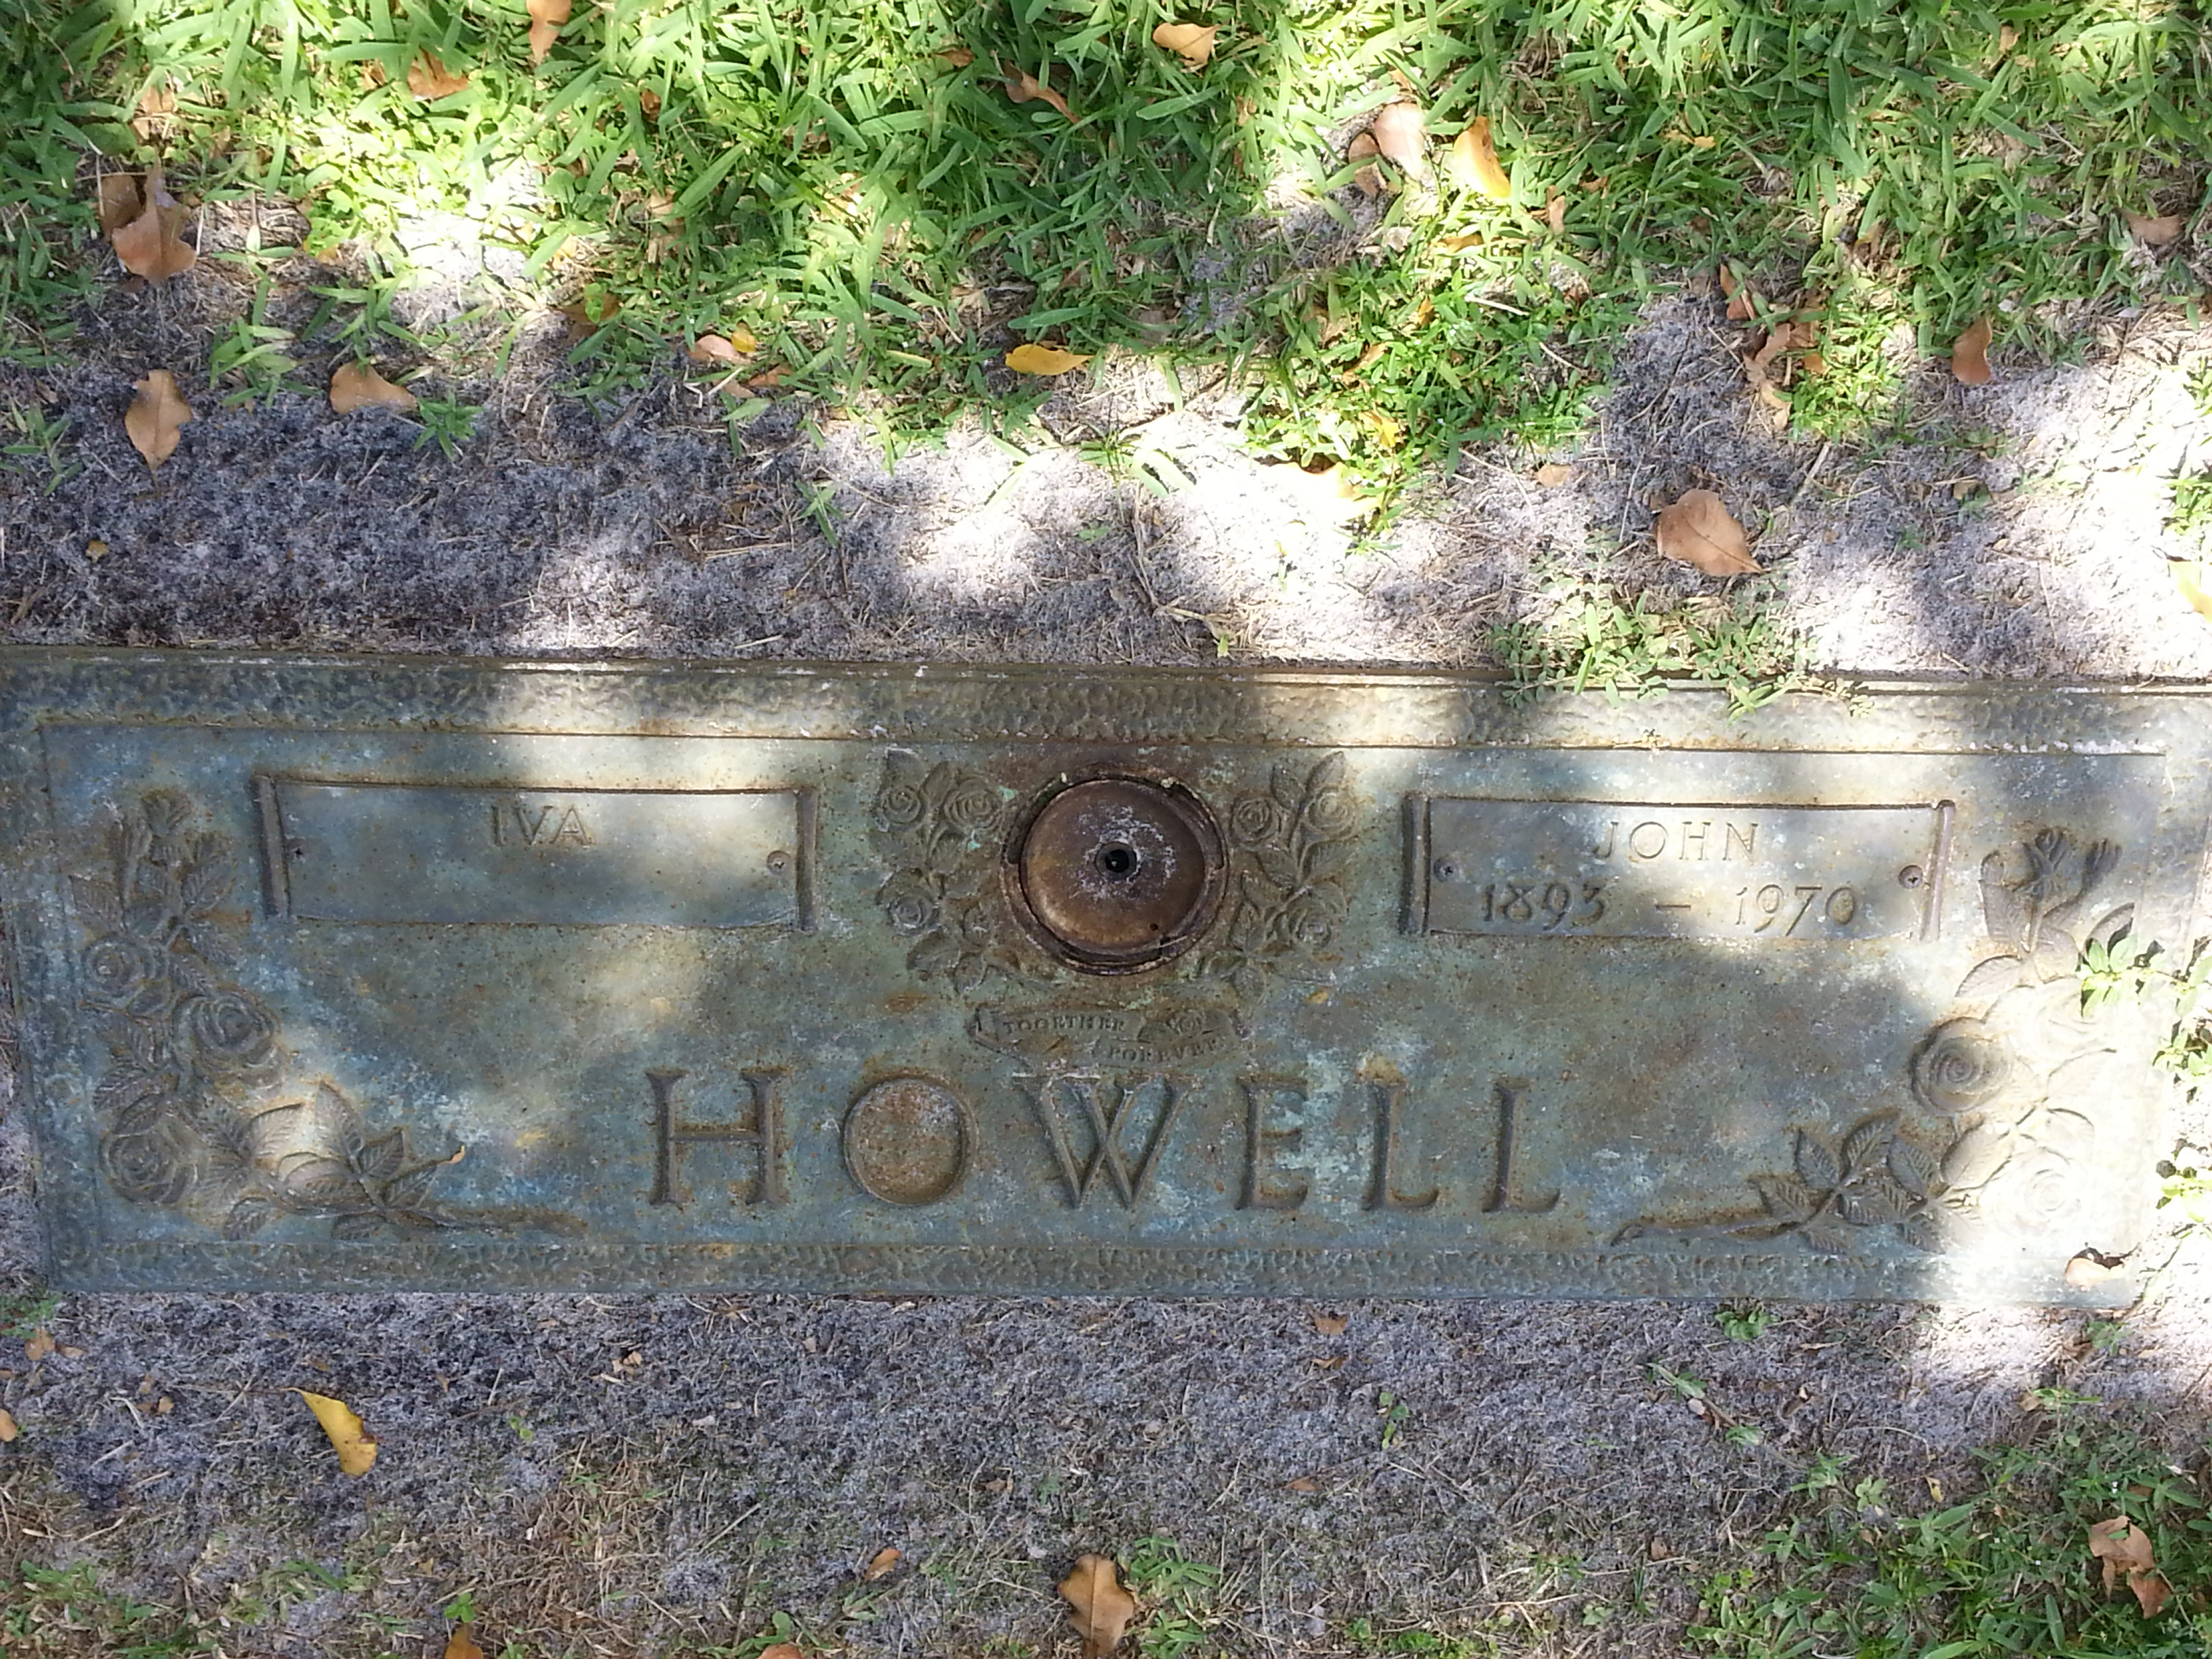 Iva Howell